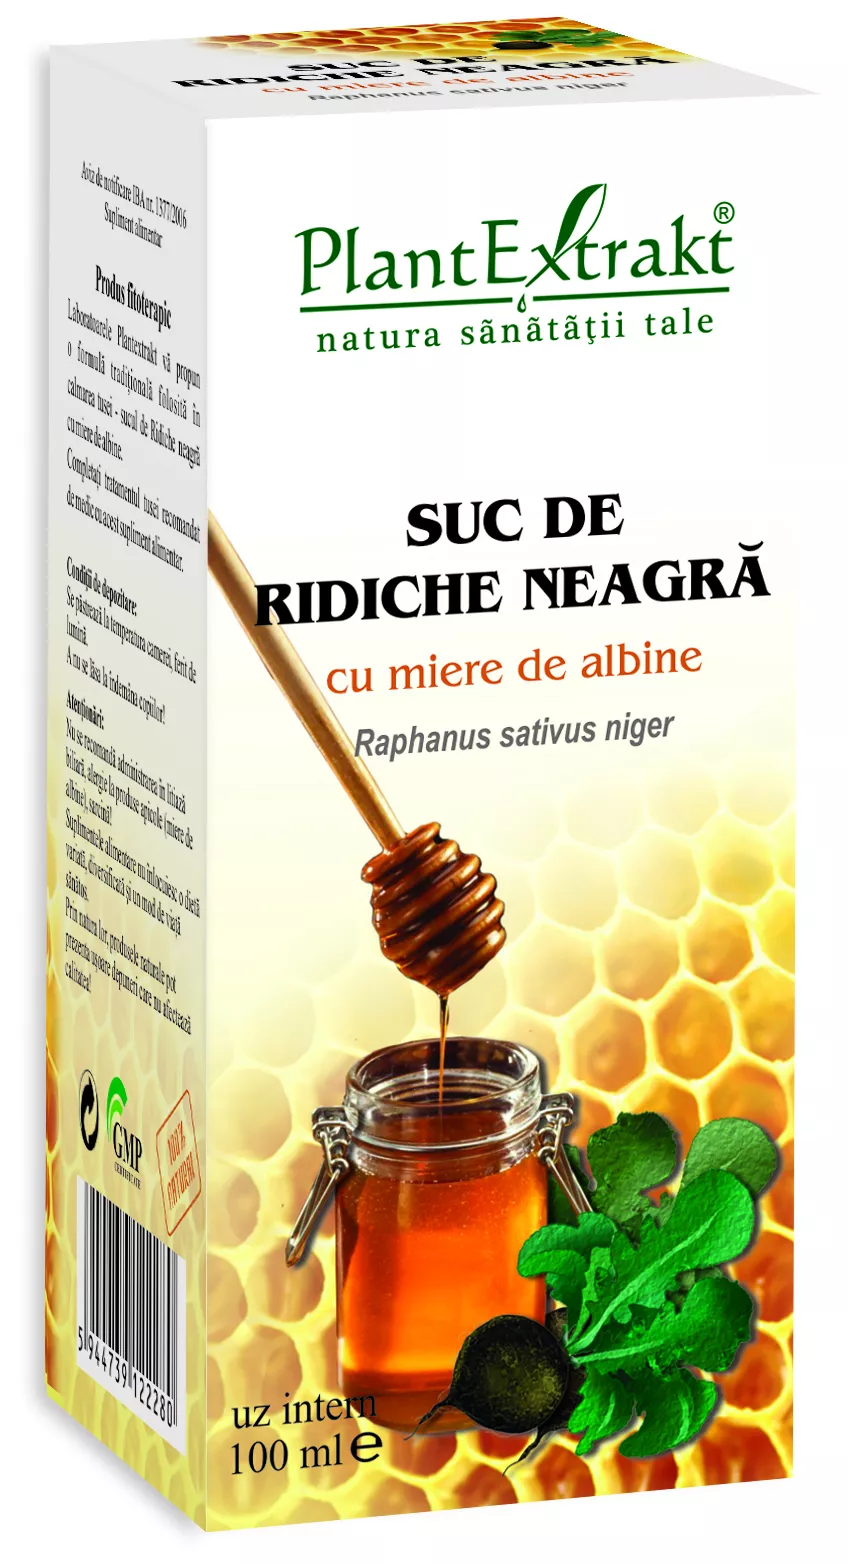 Suc de ridiche neagra cu miere de albine, 100 ml, Plantextrakt, [],remediumfarm.ro